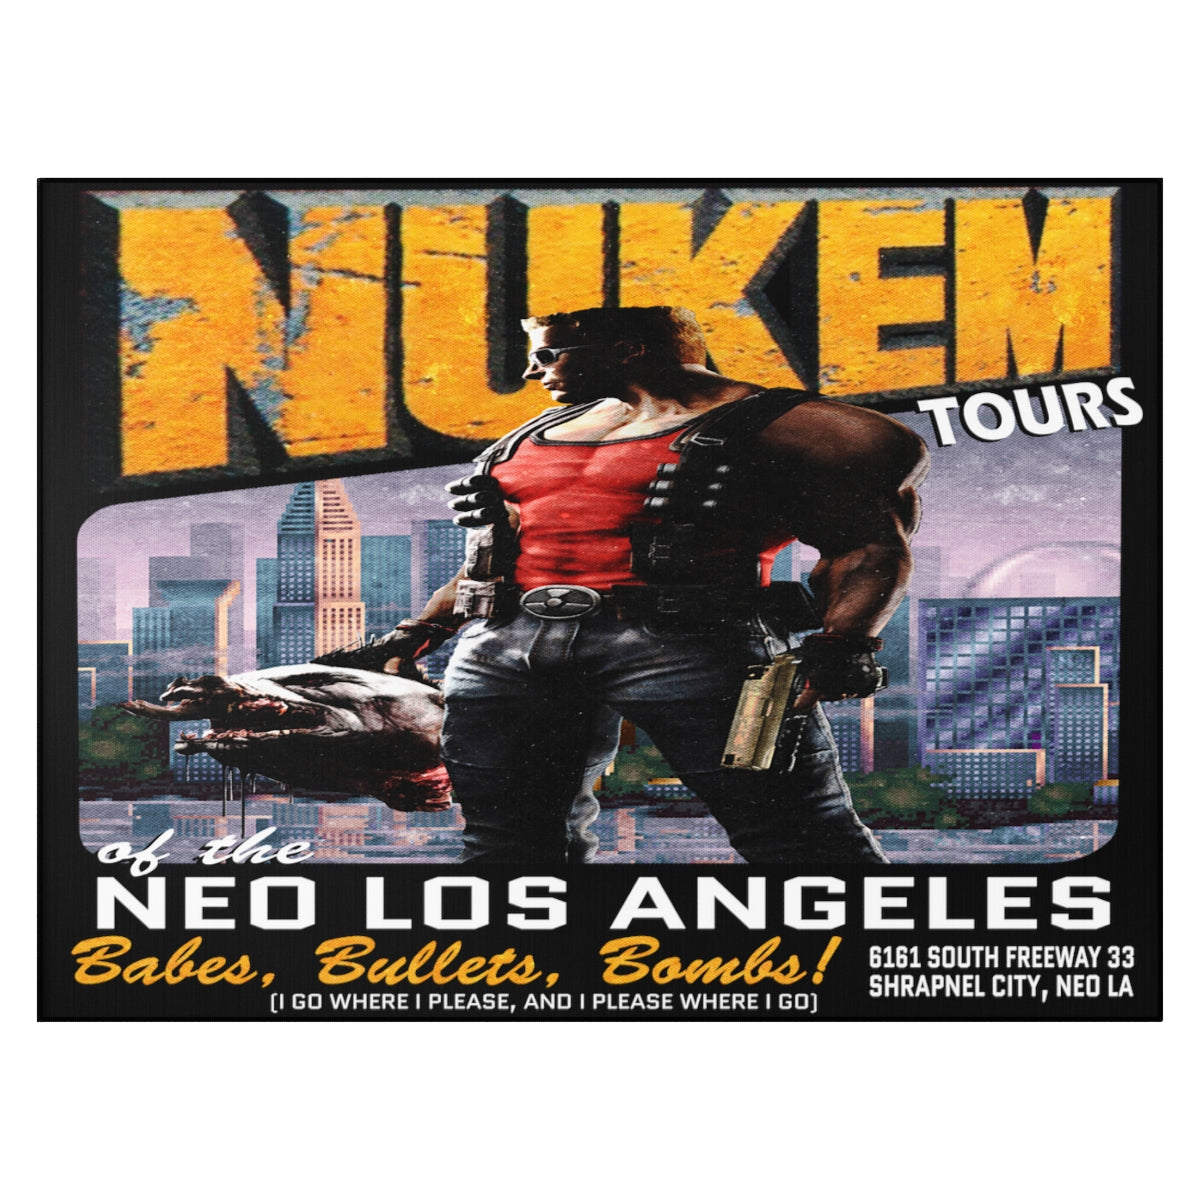 Dornier Rug - Nukem Tours